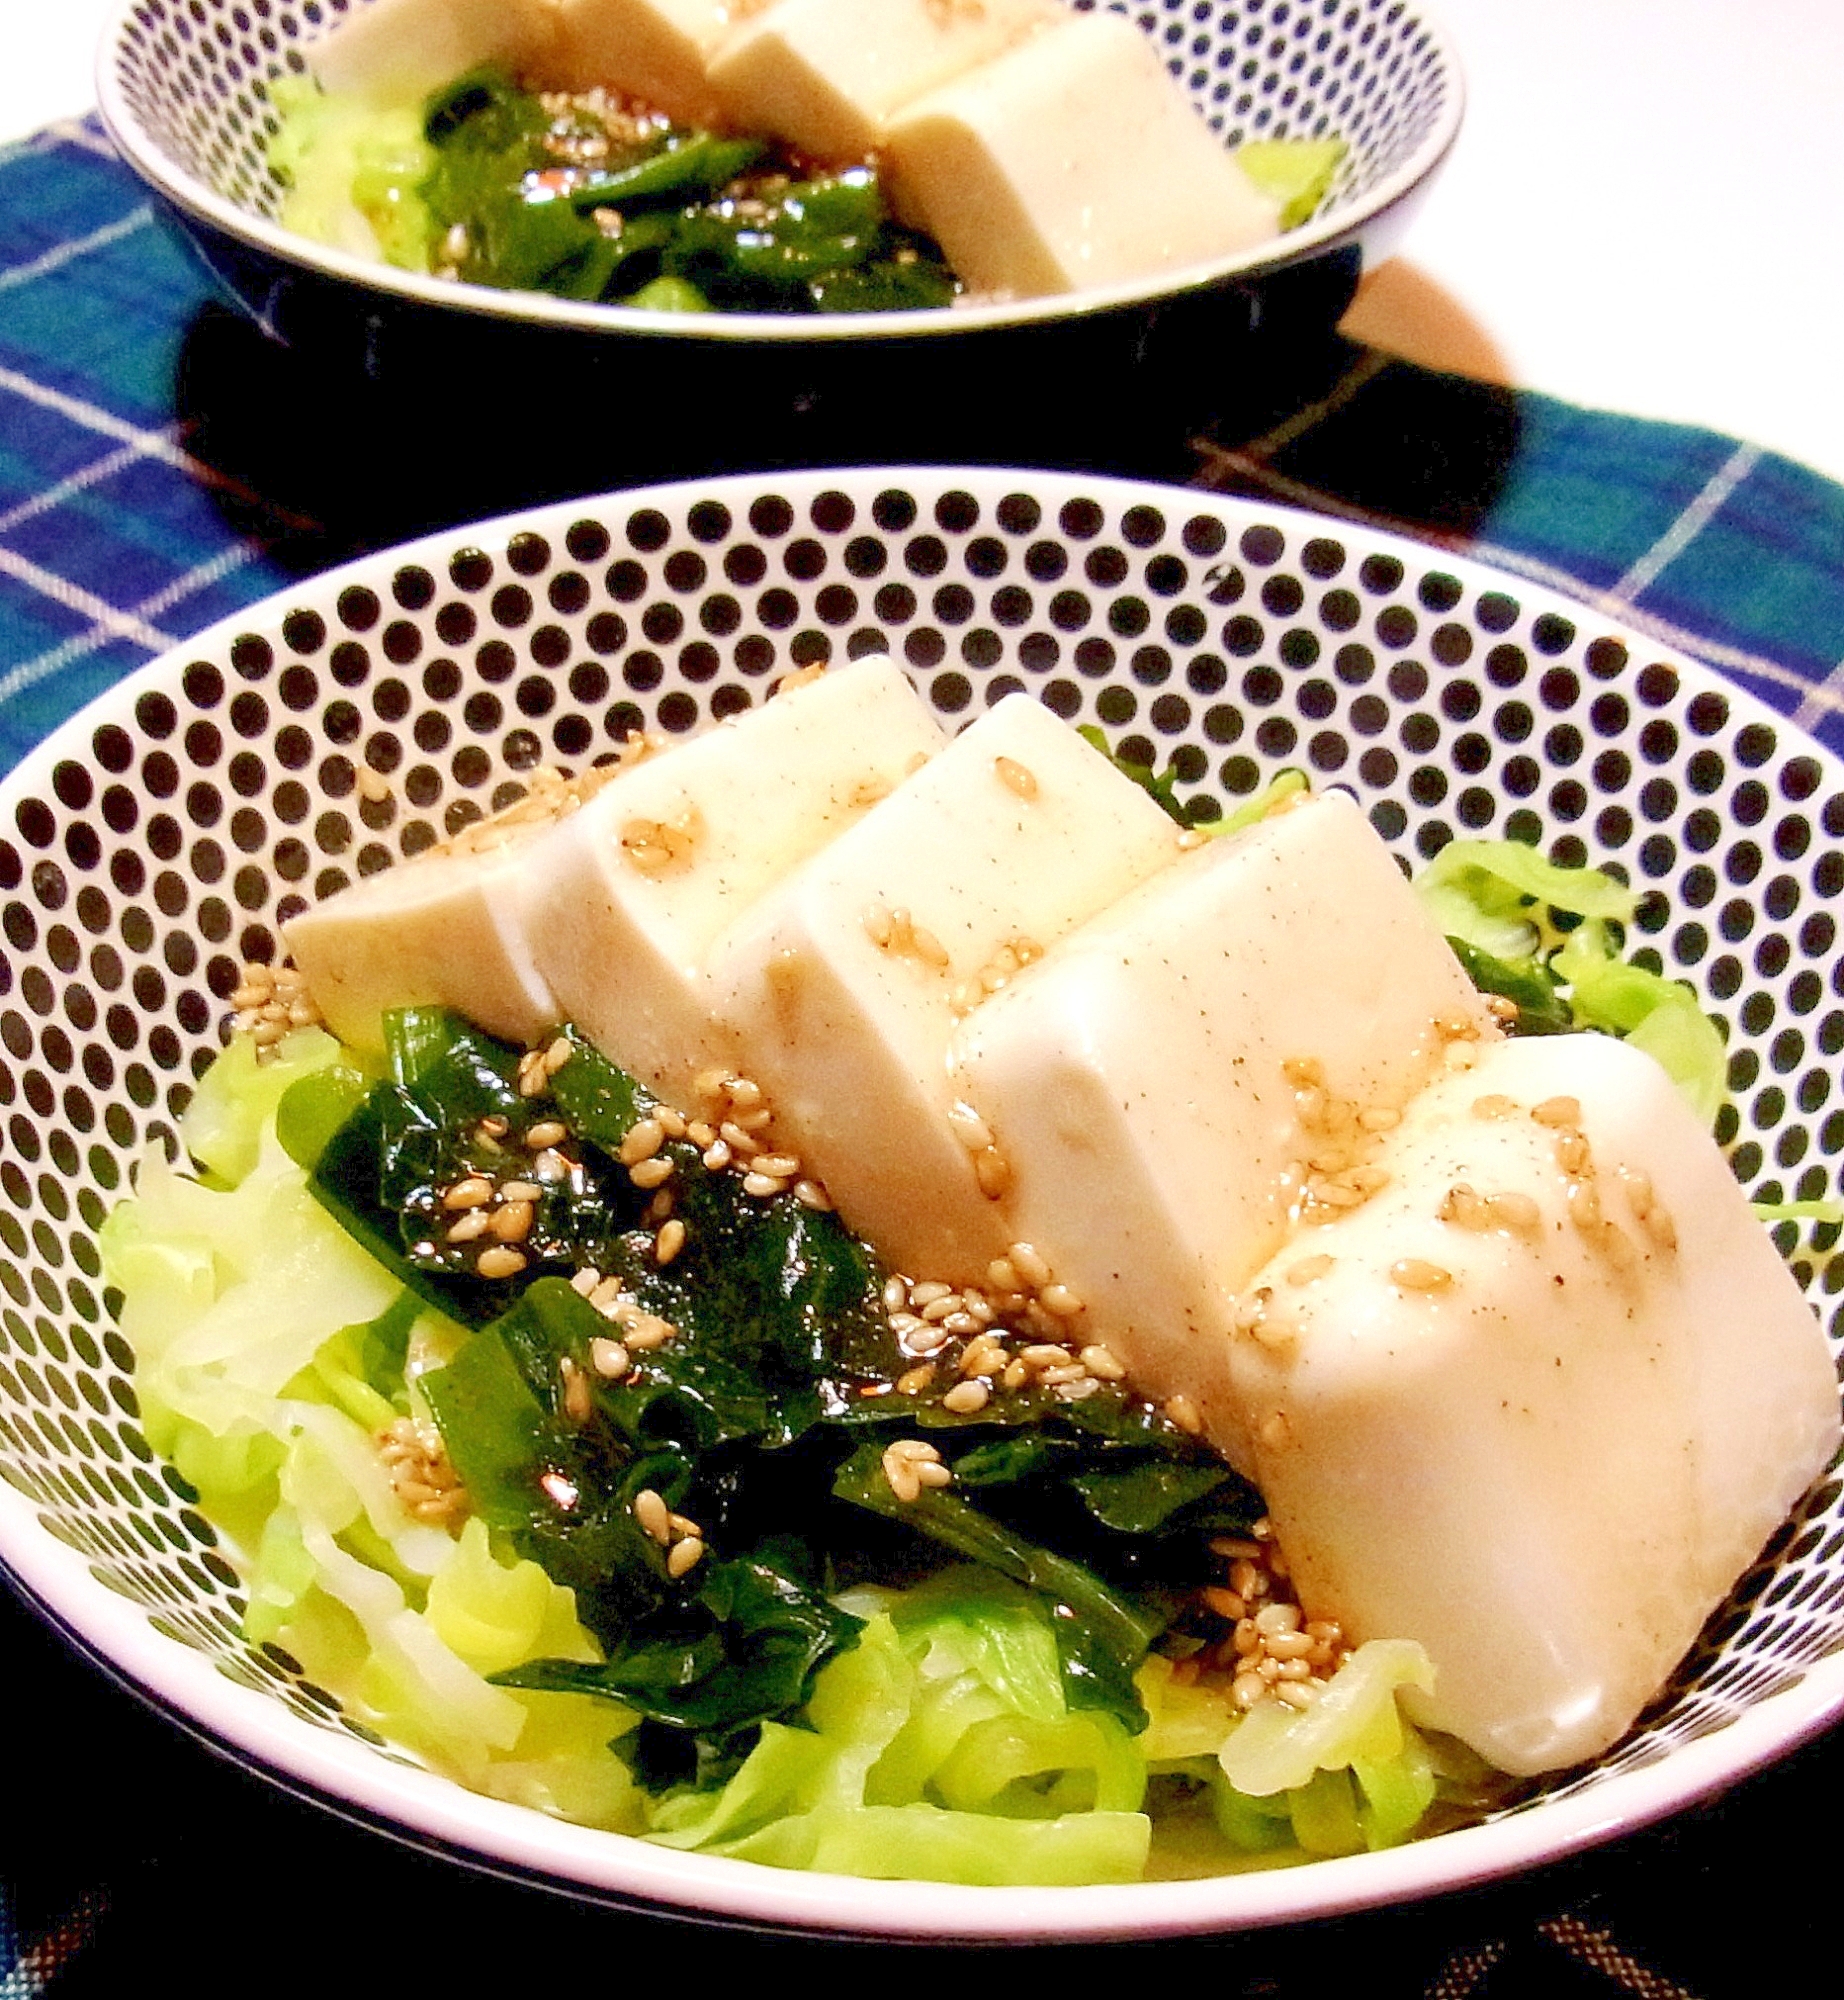 黒いドット柄の皿に盛られたキャベツと豆腐の中華サラダ